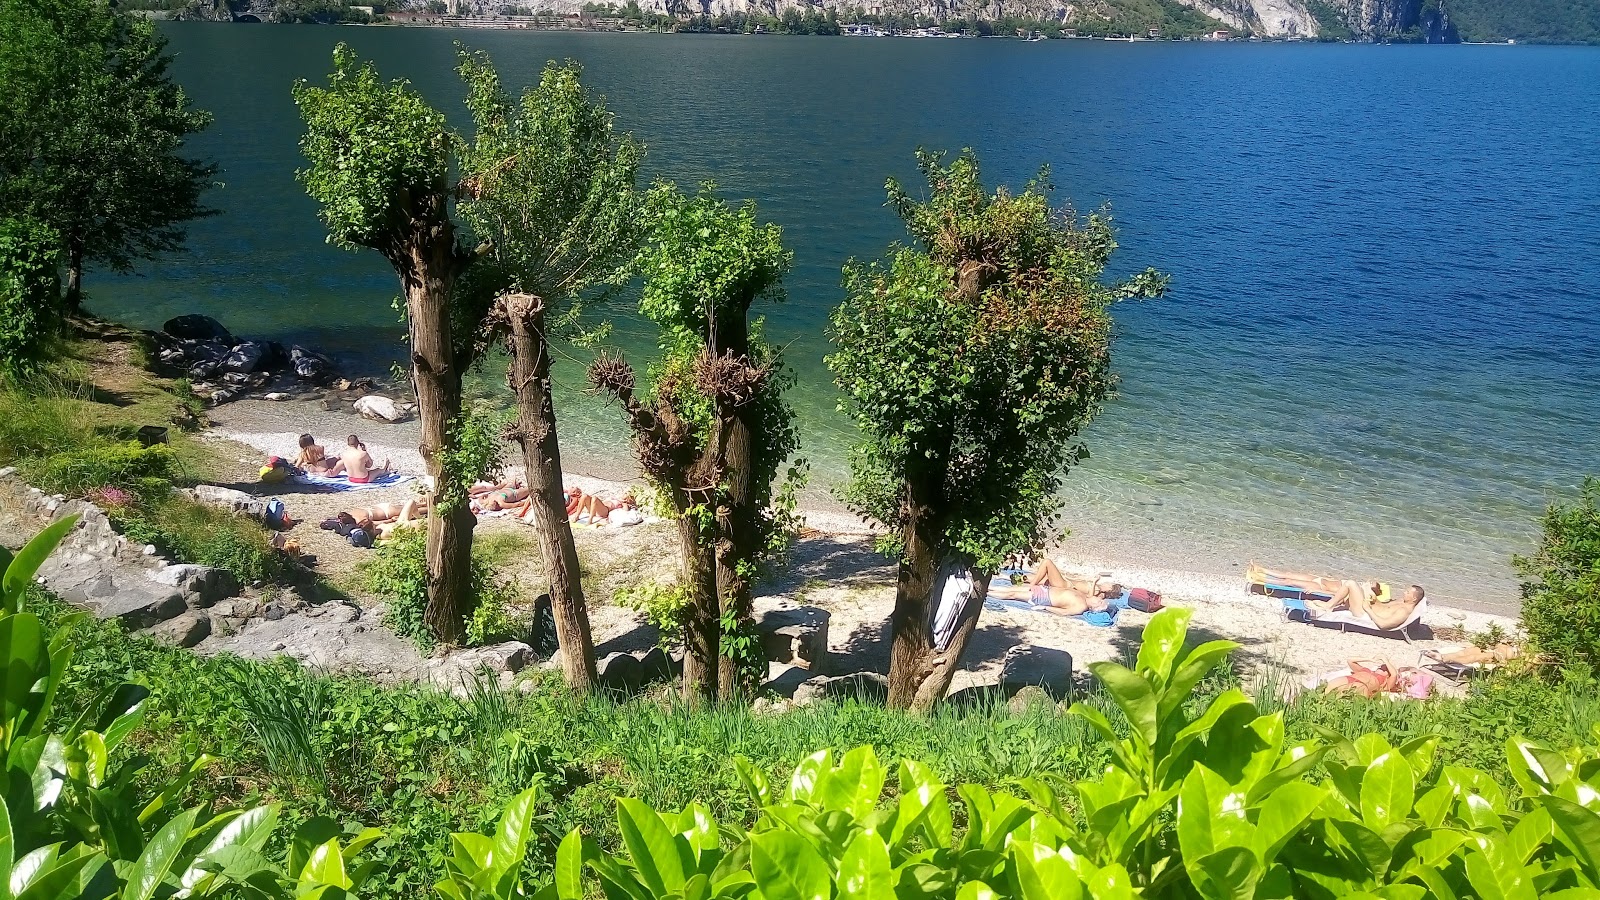 Foto de Spiaggia Abbadia Lariana com alto nível de limpeza